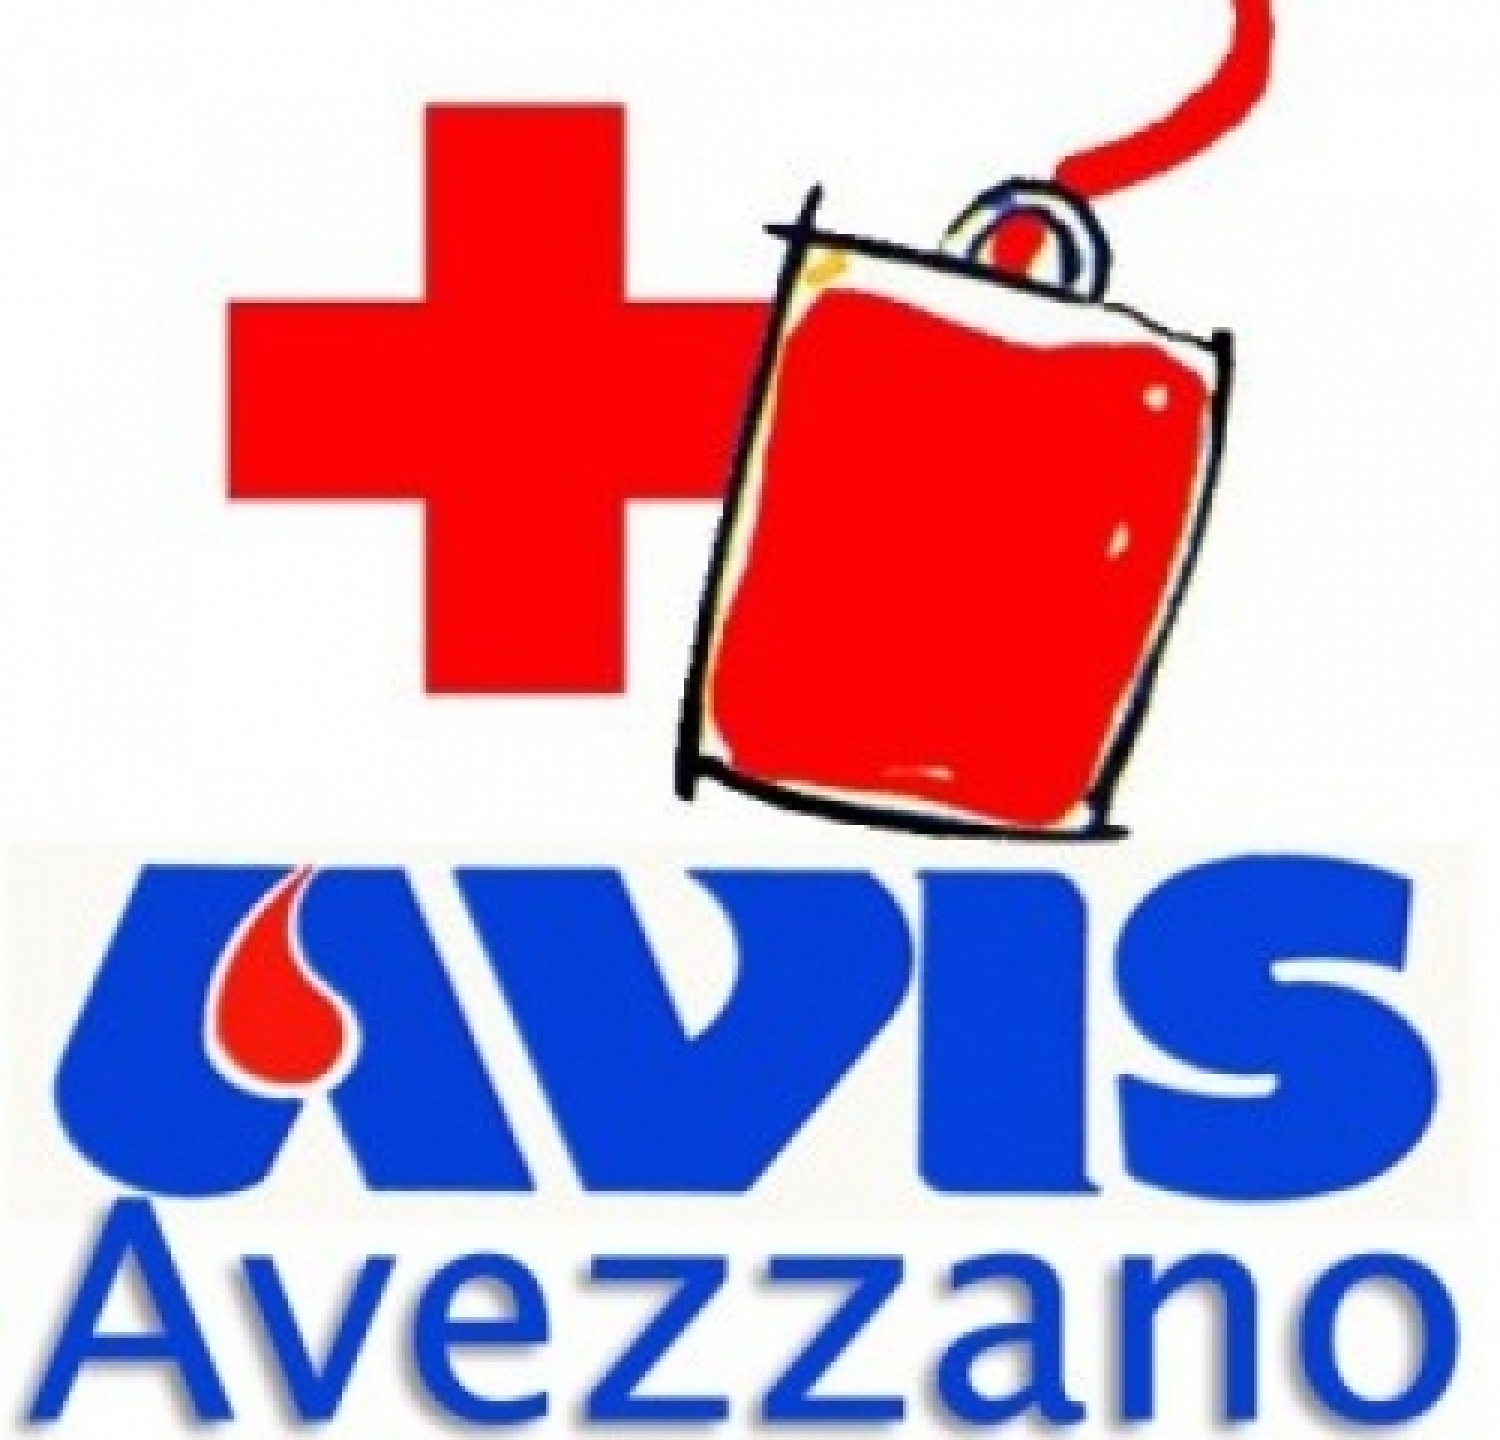 Avis Avezzano-rid.jpg